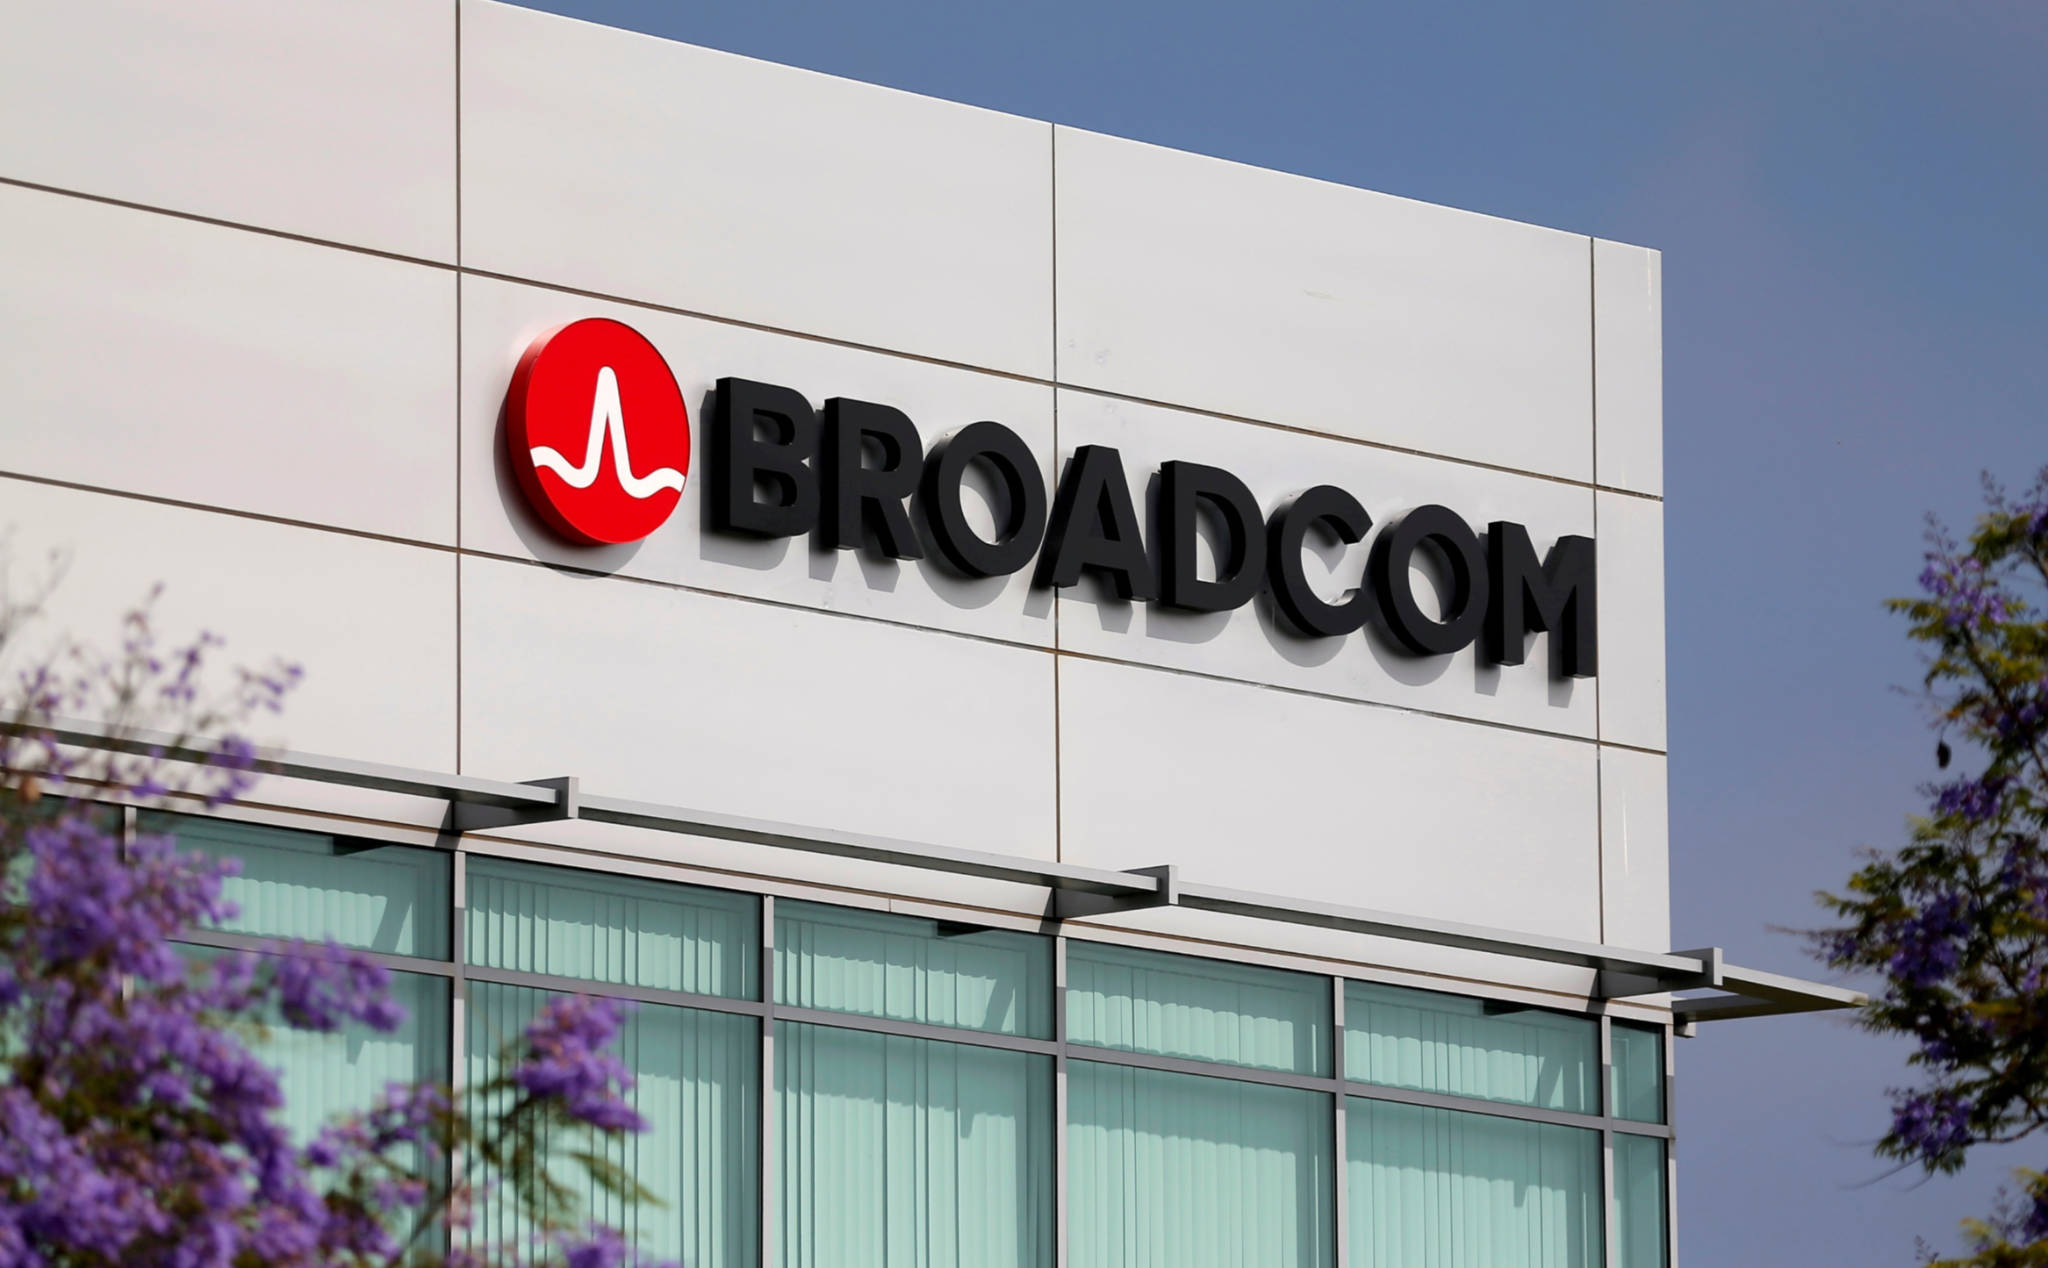 Broadcom đang bị điều tra chống độc quyền tại Mỹ và châu Âu, vậy Broadcom là ai?